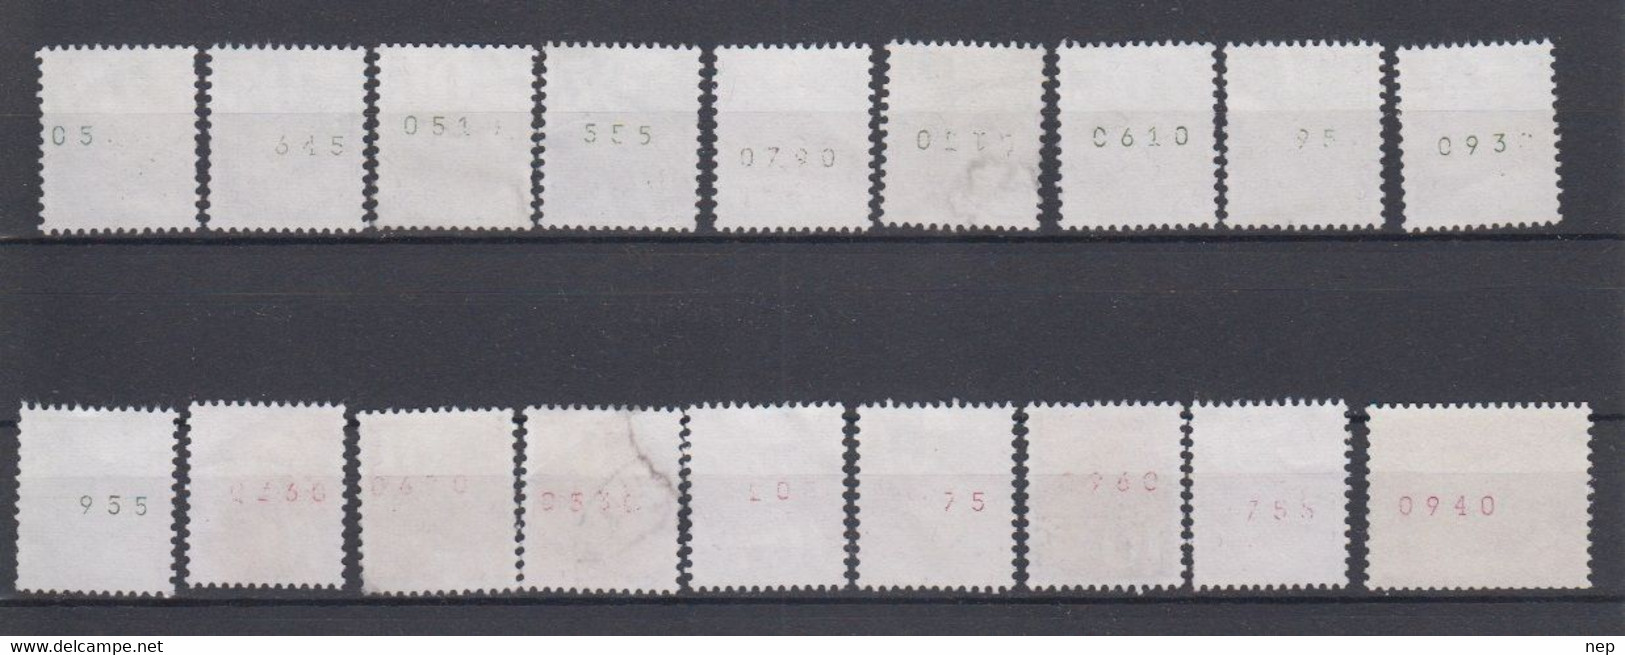 ZWITSERLAND - Michel - 1960/70 - Nr 699 R + 933 (x10) + 934 (x7) - (Verschillende Rolnummers) - Gest/Obl/Us - Rollen